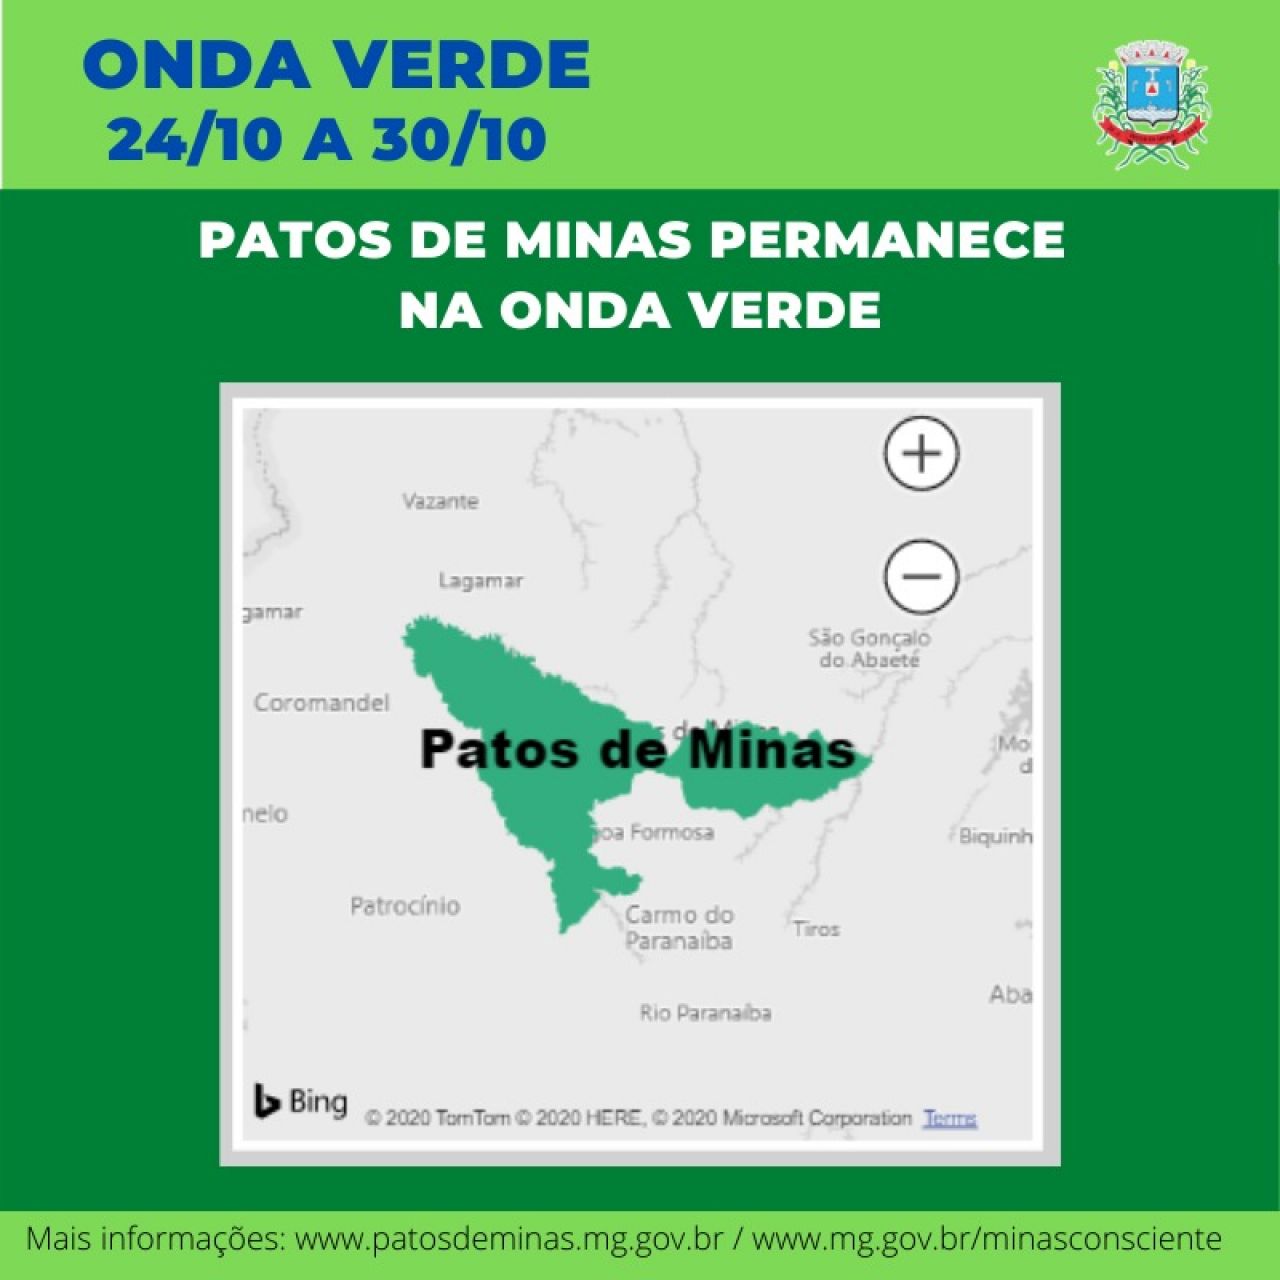 Covid-19: Patos de Minas permanece na onda verde